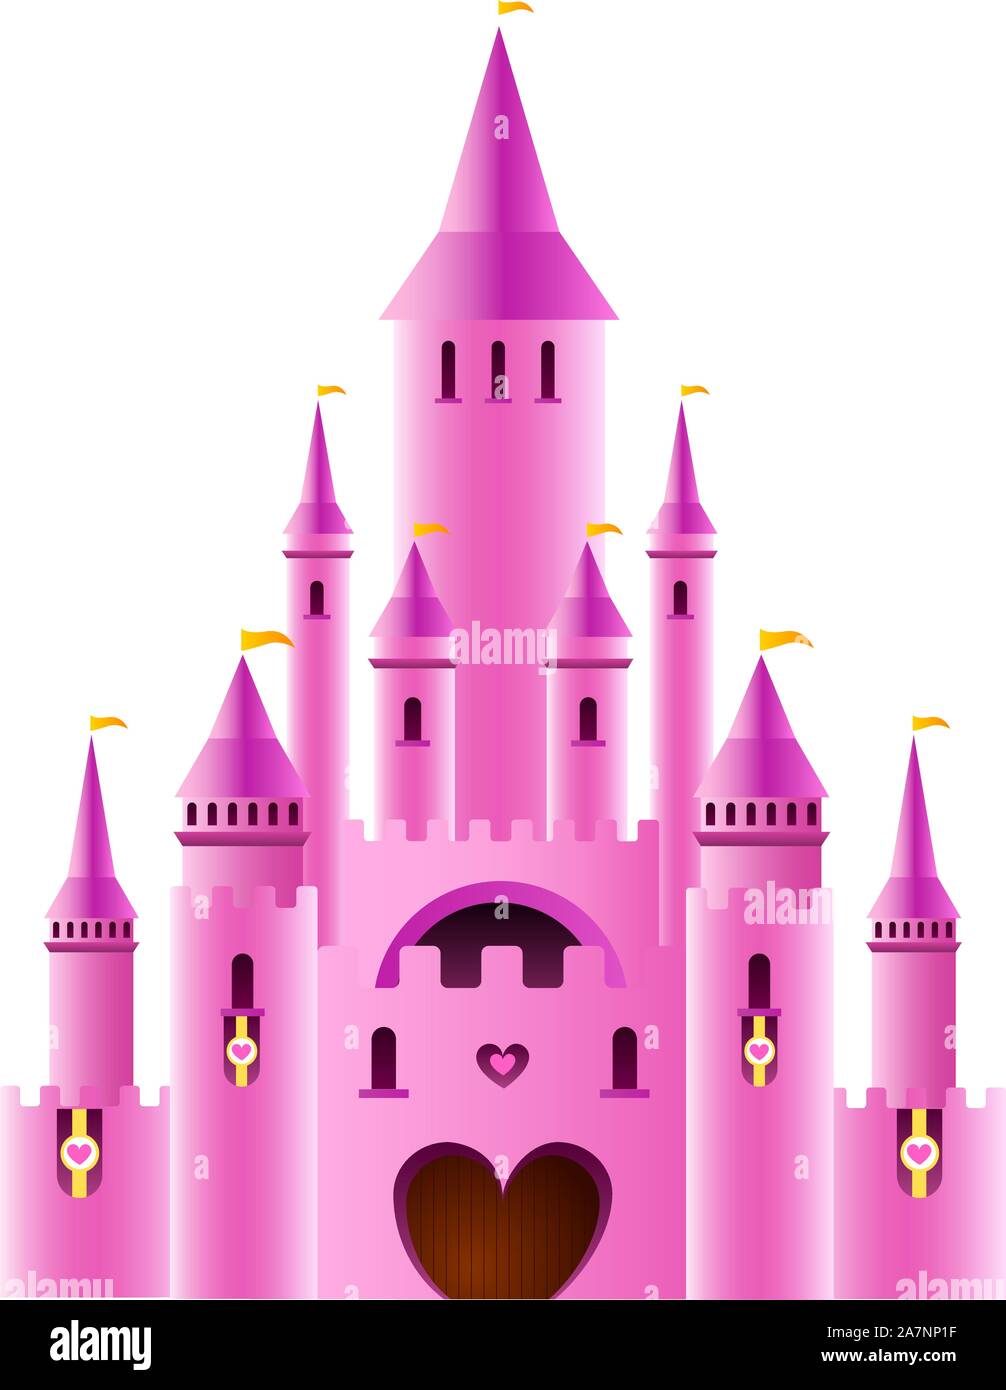 Conte de fées Sparkly Pink Palace château forteresse avec drapeau arc-en-ciel et de l'illustration vectorielle. Illustration de Vecteur